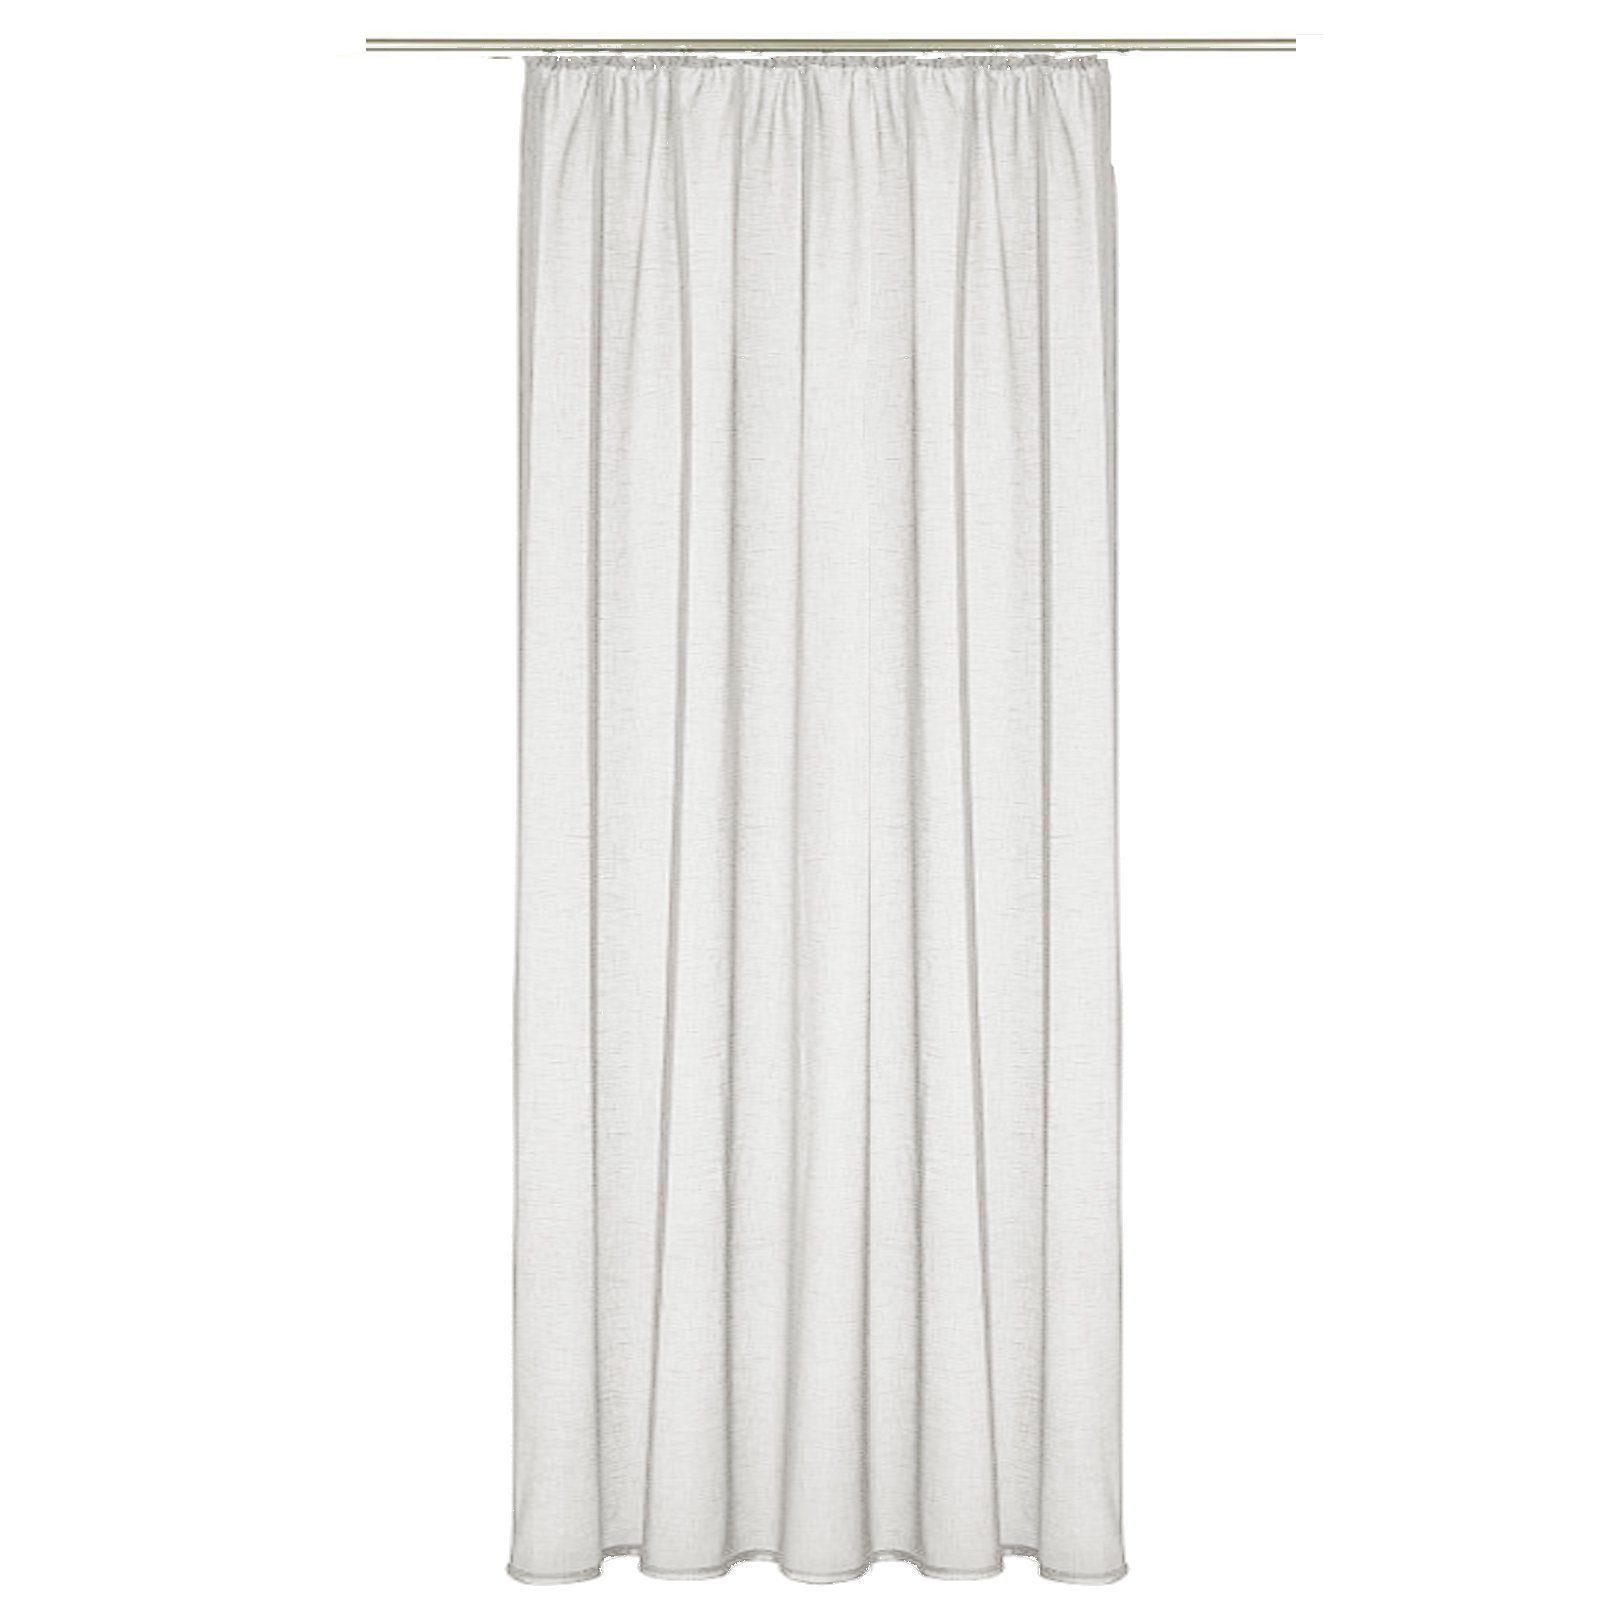 Vorhang, JEMIDI, Vorhang transparent 140x245cm - Gardine mit Kräuselband  Universalband - 100% Polyester Schal lang für Wohnzimmer Schlafzimmer -  weiß online kaufen | OTTO